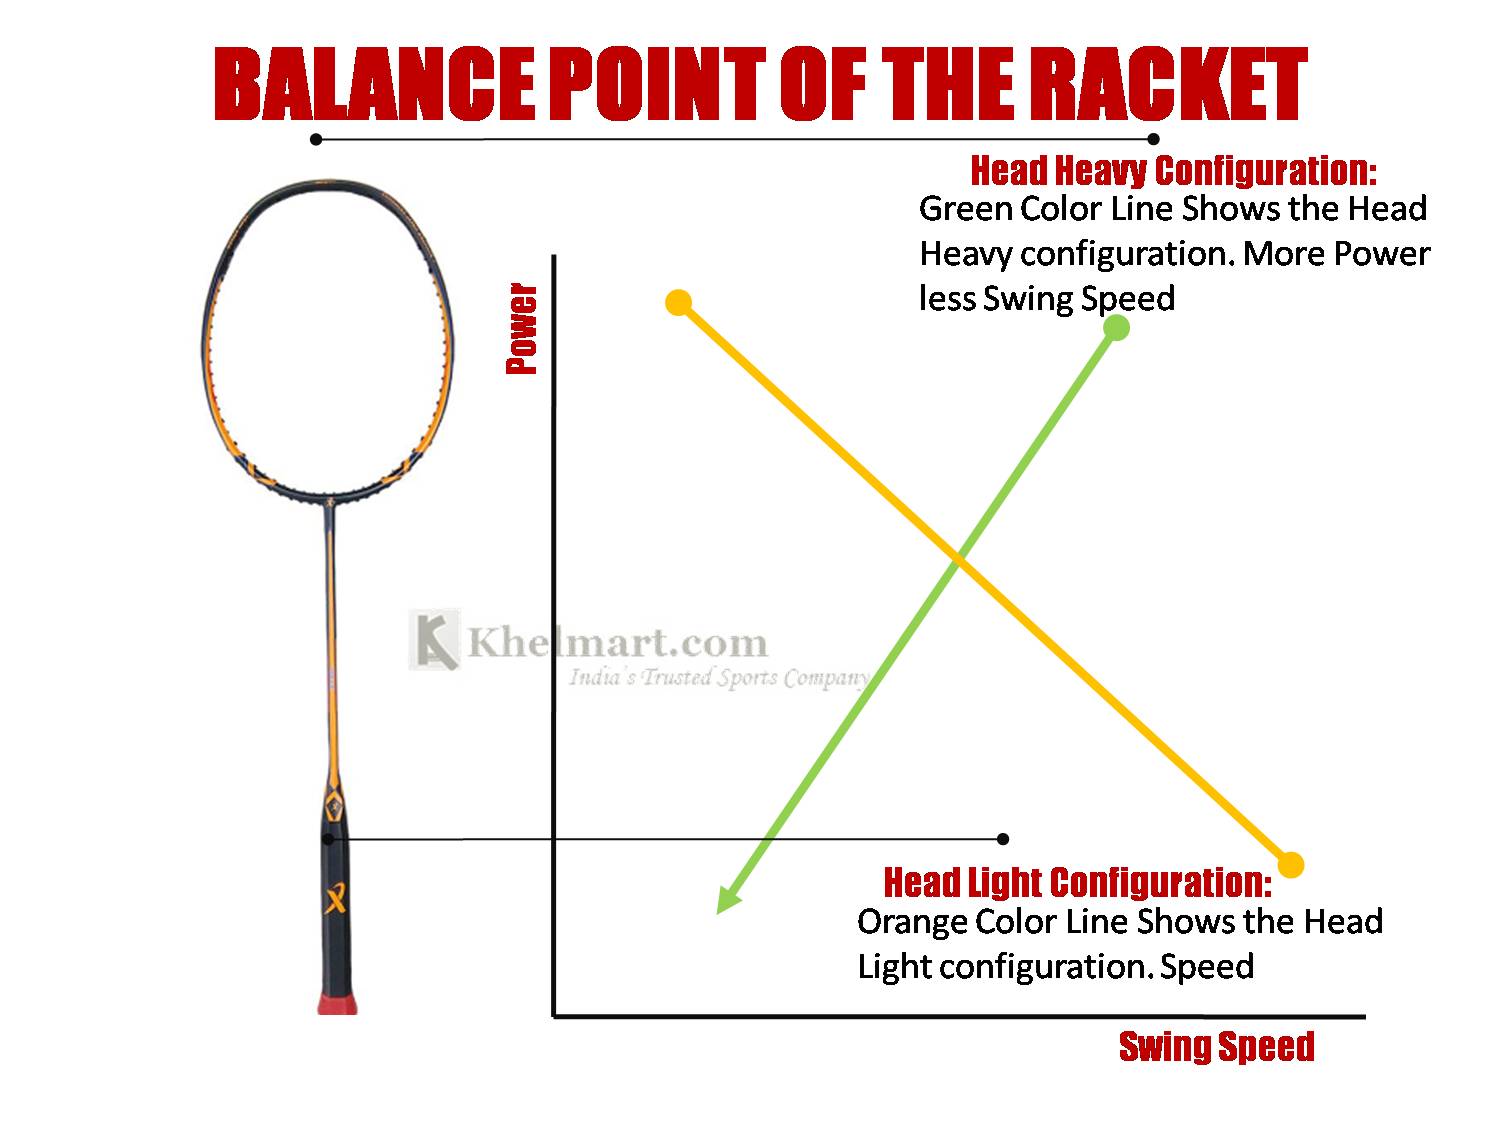 Balance_Point_Badminton_racket_Khelmart.jpg